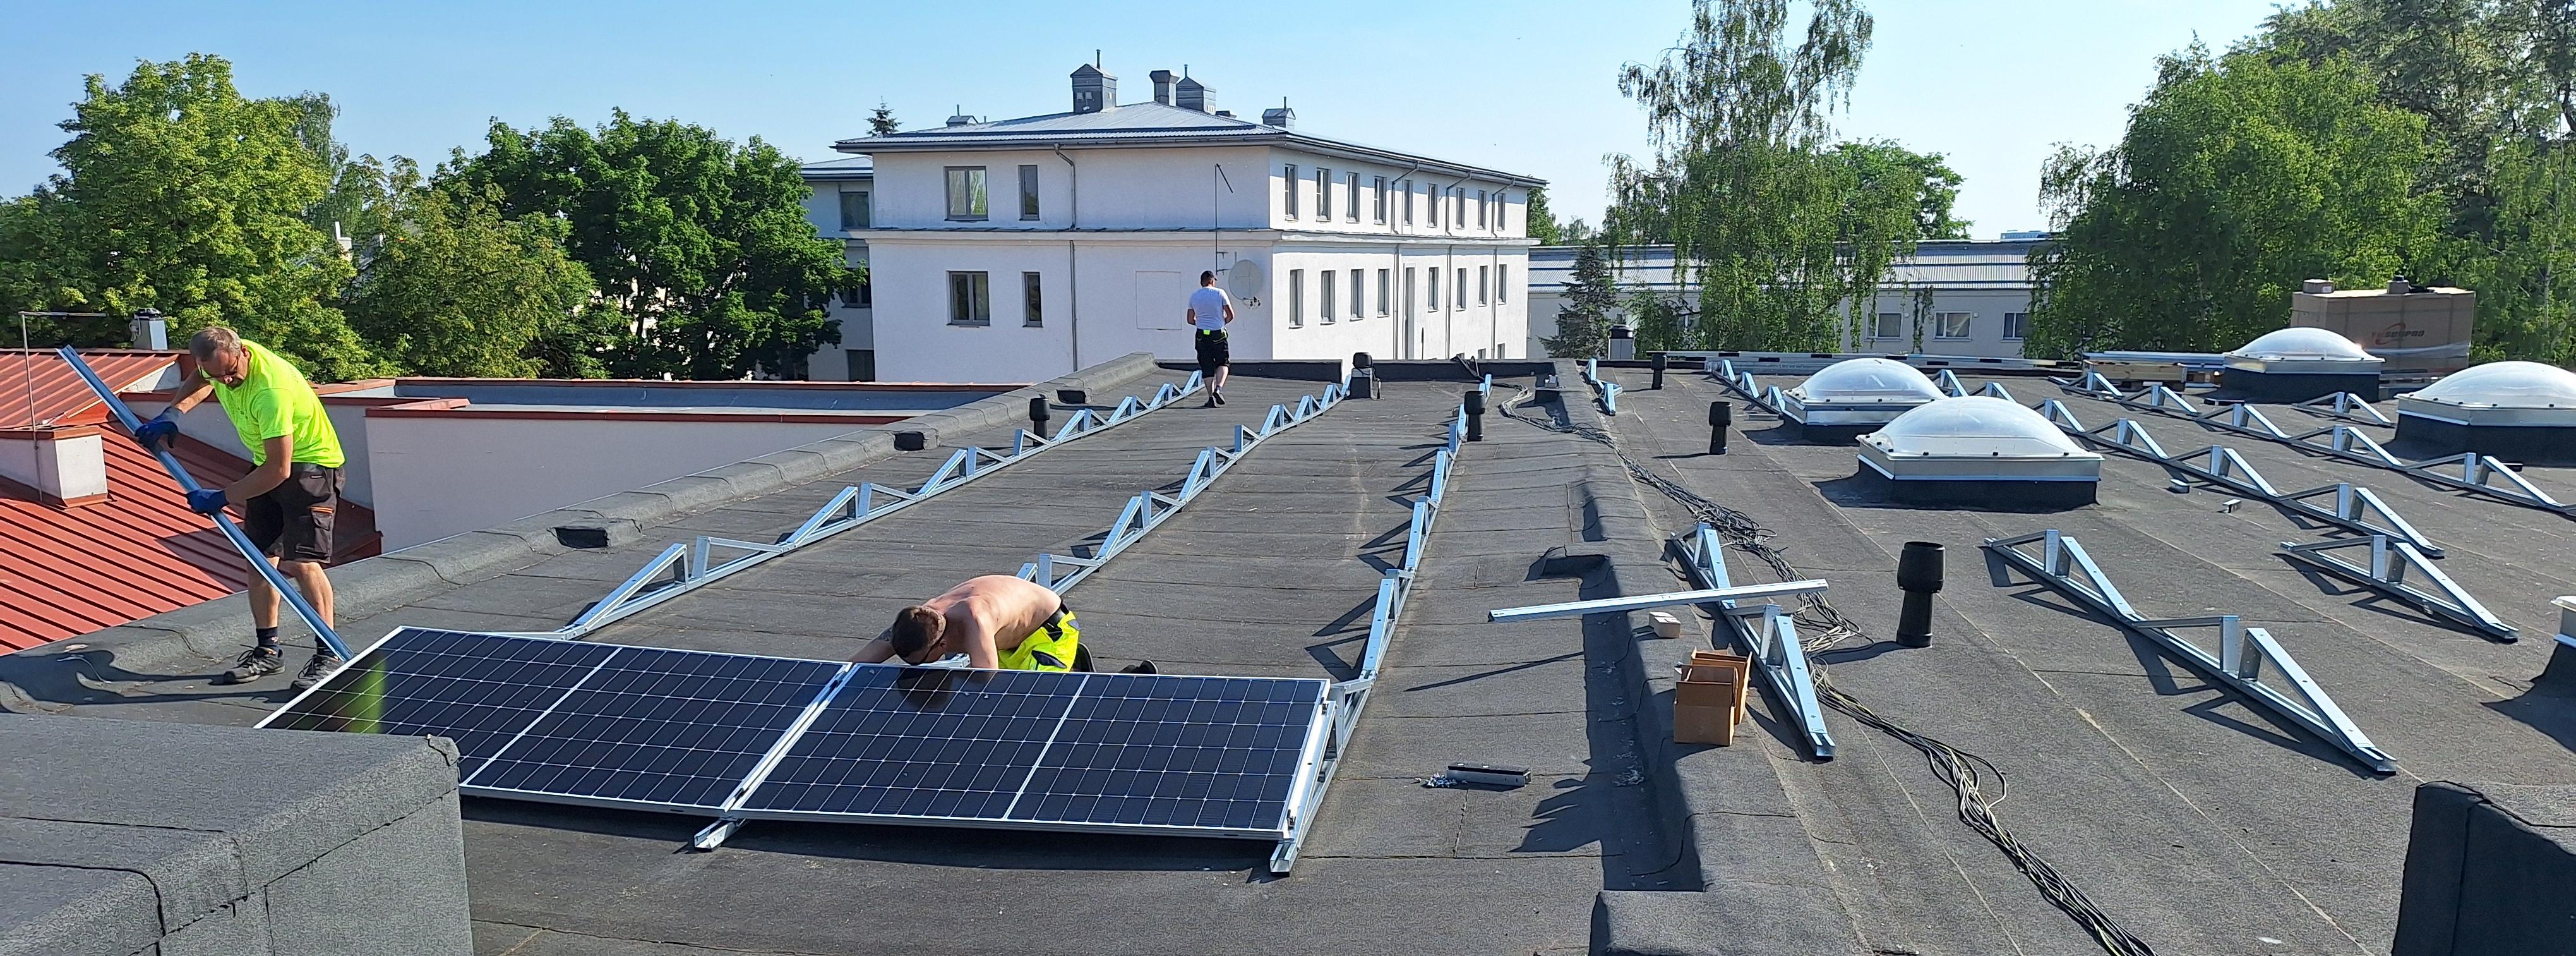 EKM hoidlate katus on päikesepaneelidega kattumas